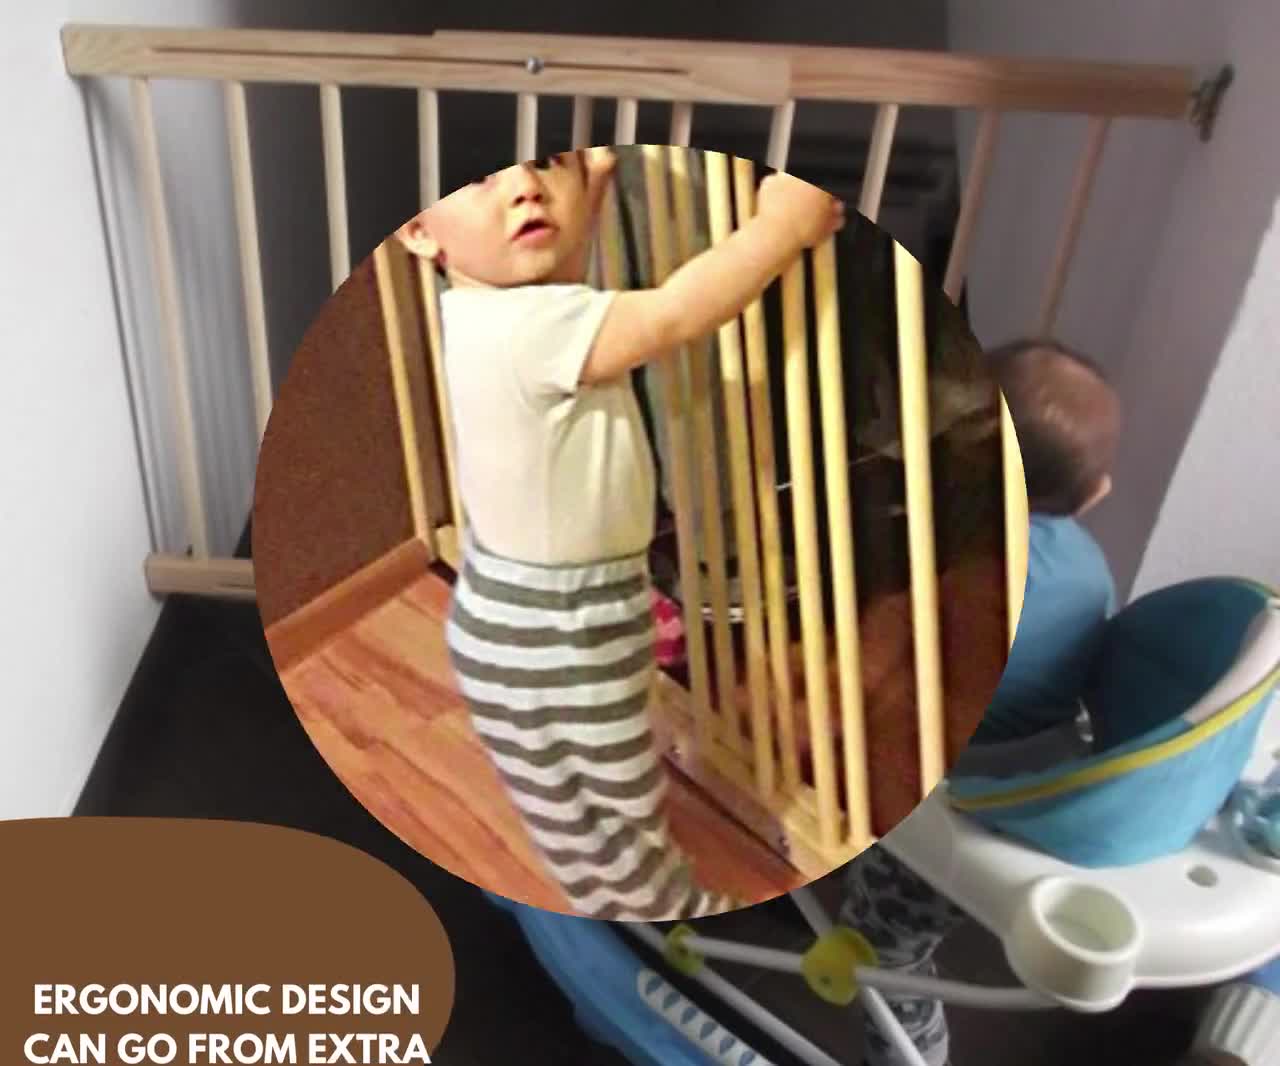 Barrière de sécurité en bois polyvalente pour bébé extensible 28,3 '' 48 ''  72-122 cm Barrières d'escalier en bois sécurisées pour bébé -  France